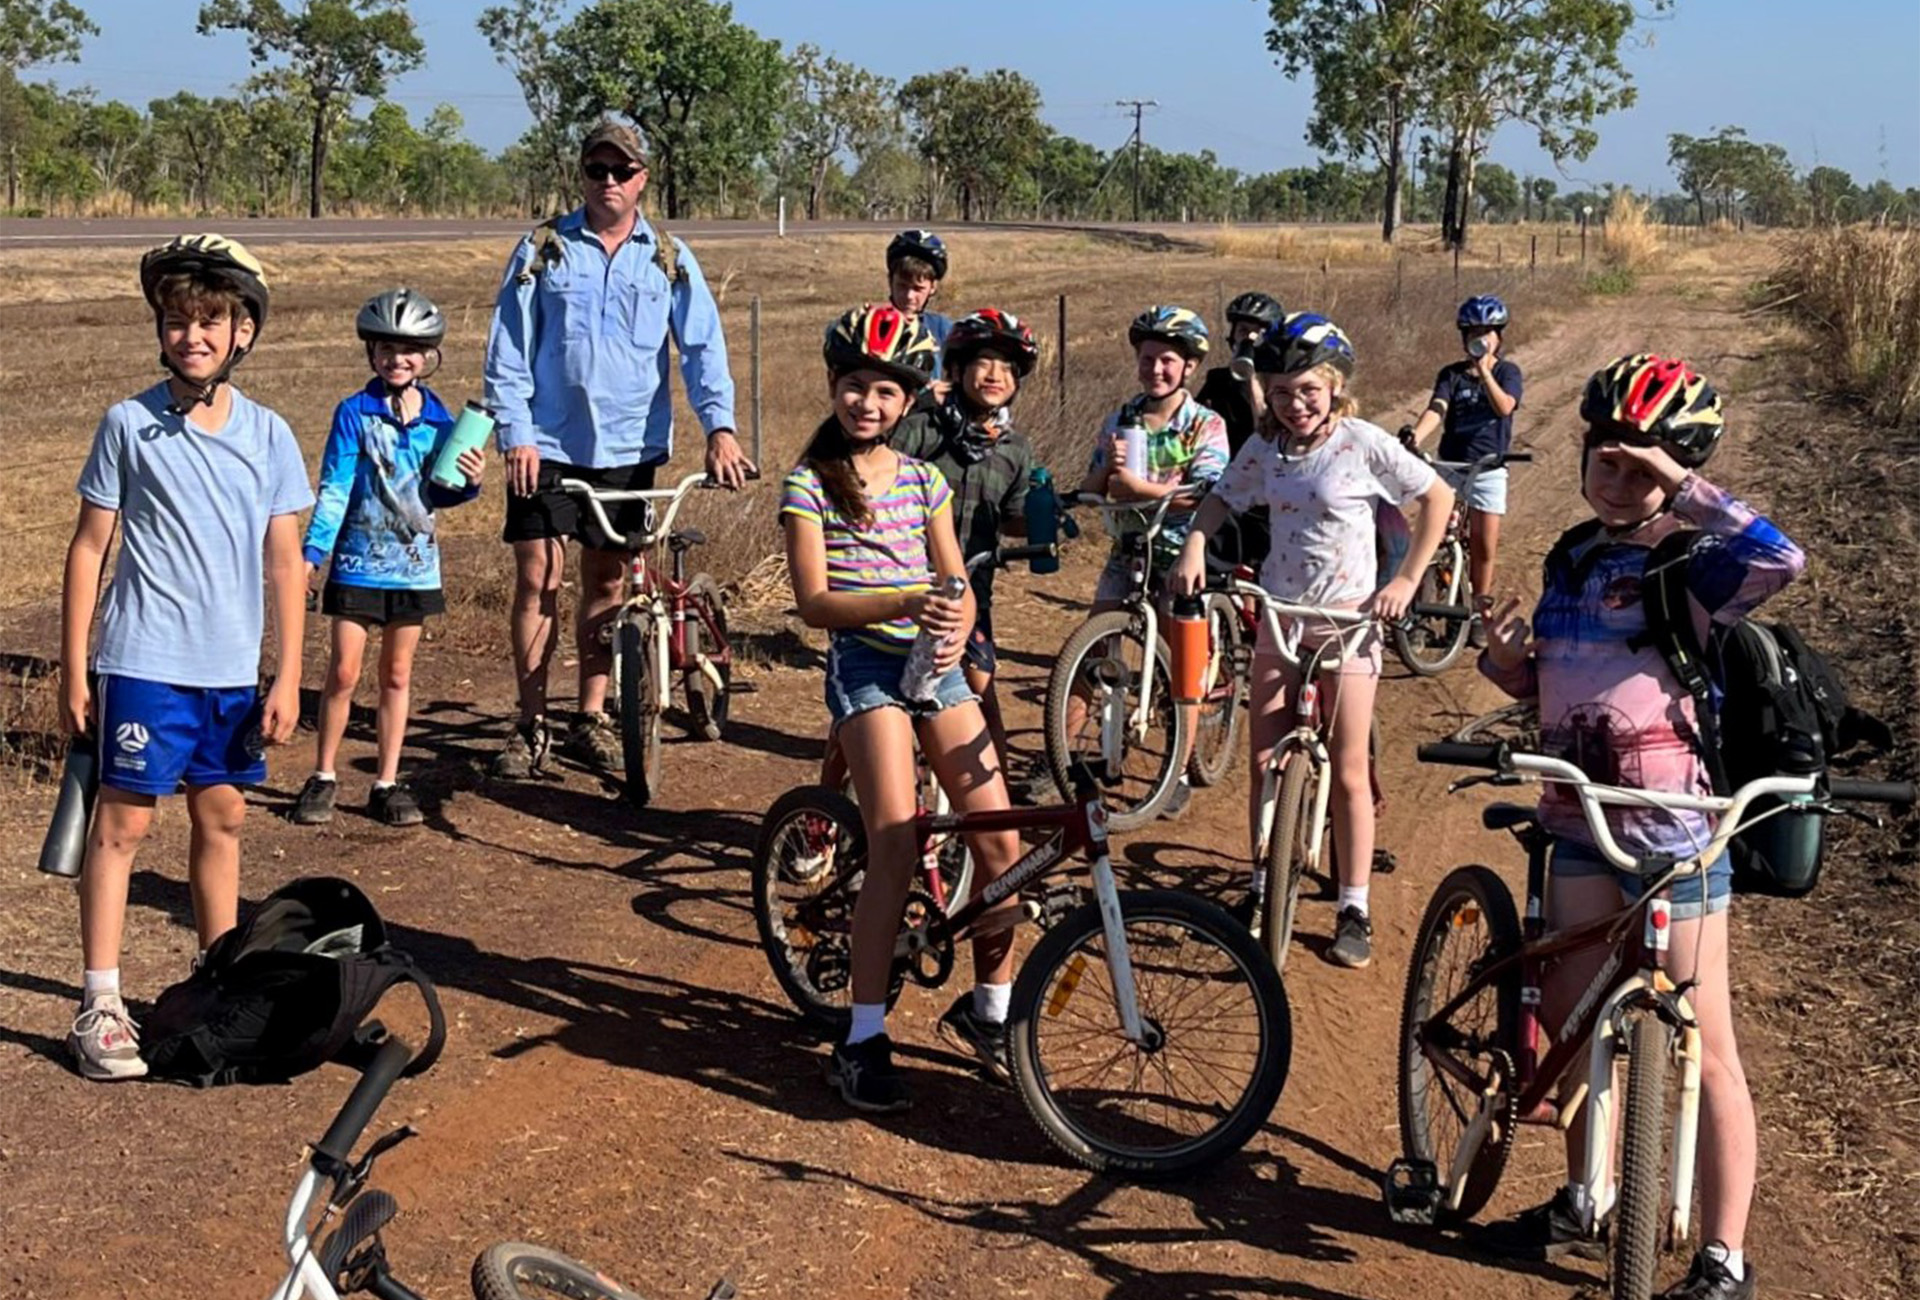 Students riding bikes at camp.